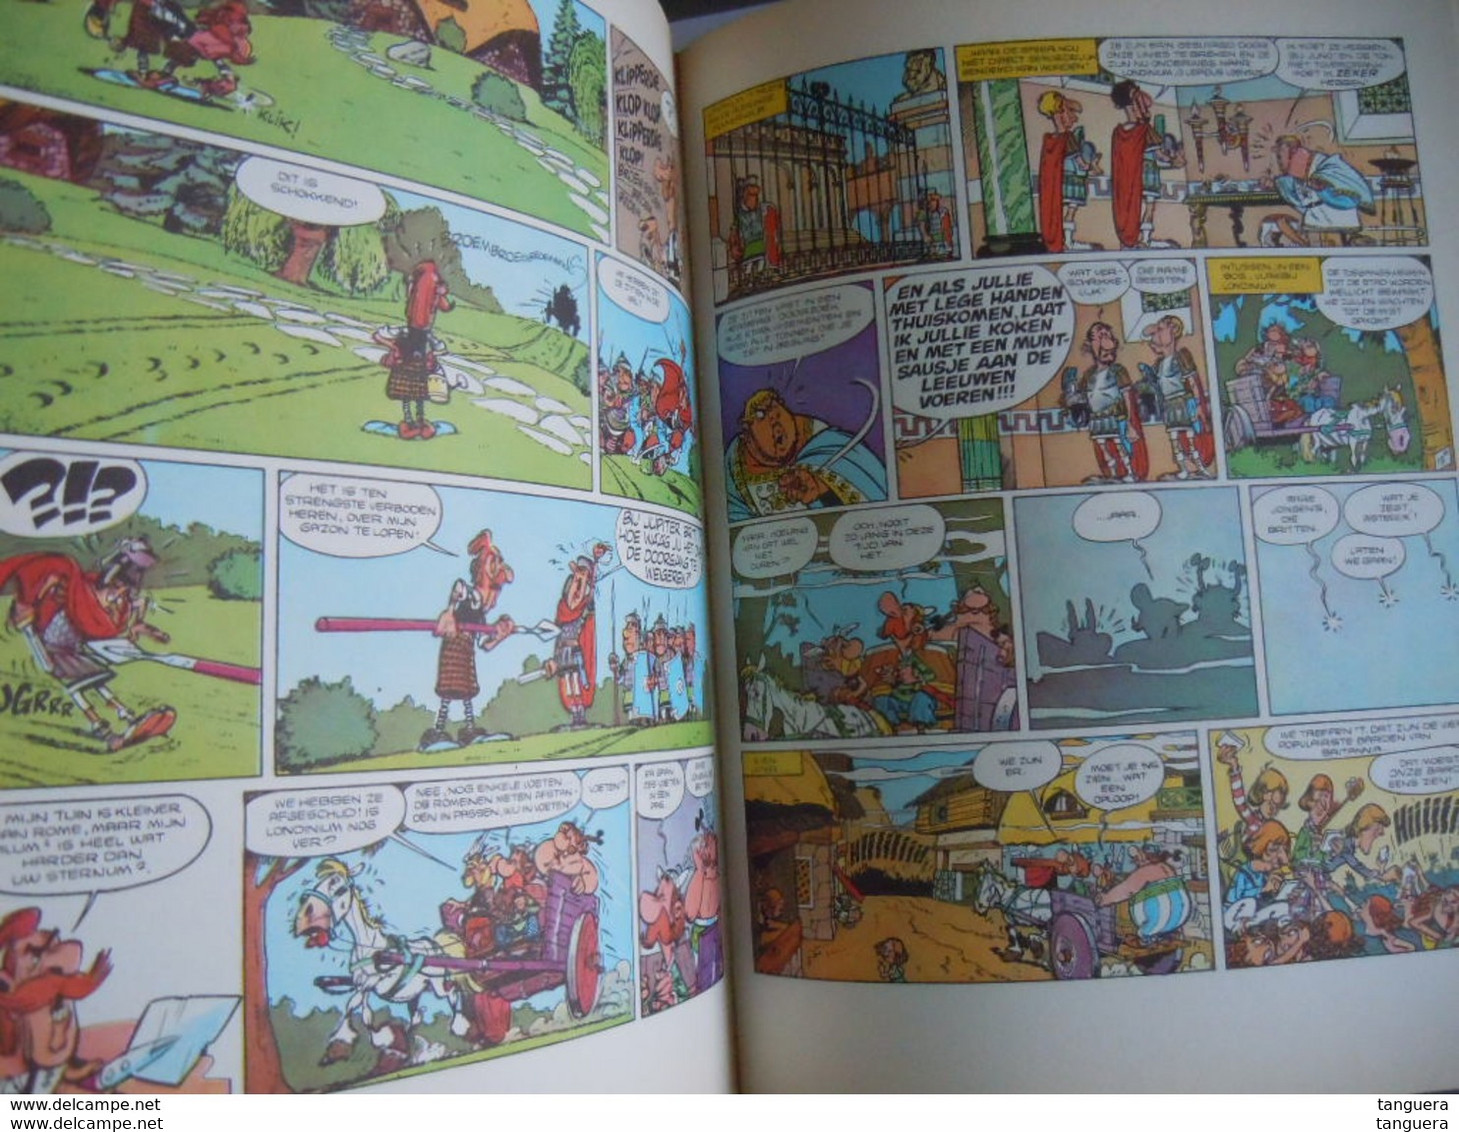 De Avonturen van Asterix de Galliër - bundeling 4 verhalen 1981 Goscinny Uderzo Dargaud Oberon